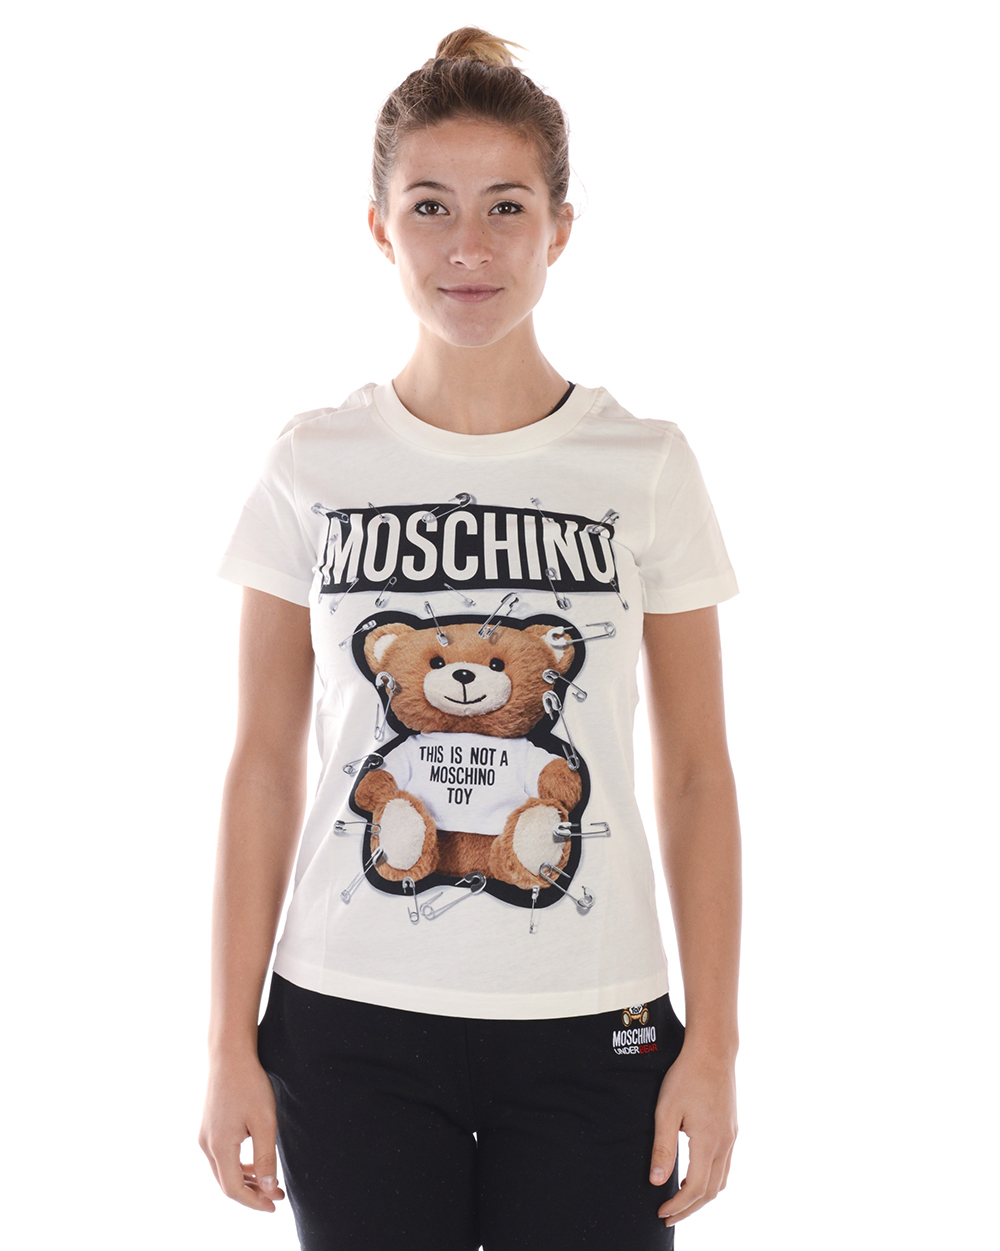 T shirt Moschino Sweatshirt Coton Femme Blanc V07055540 2002 TL. 40